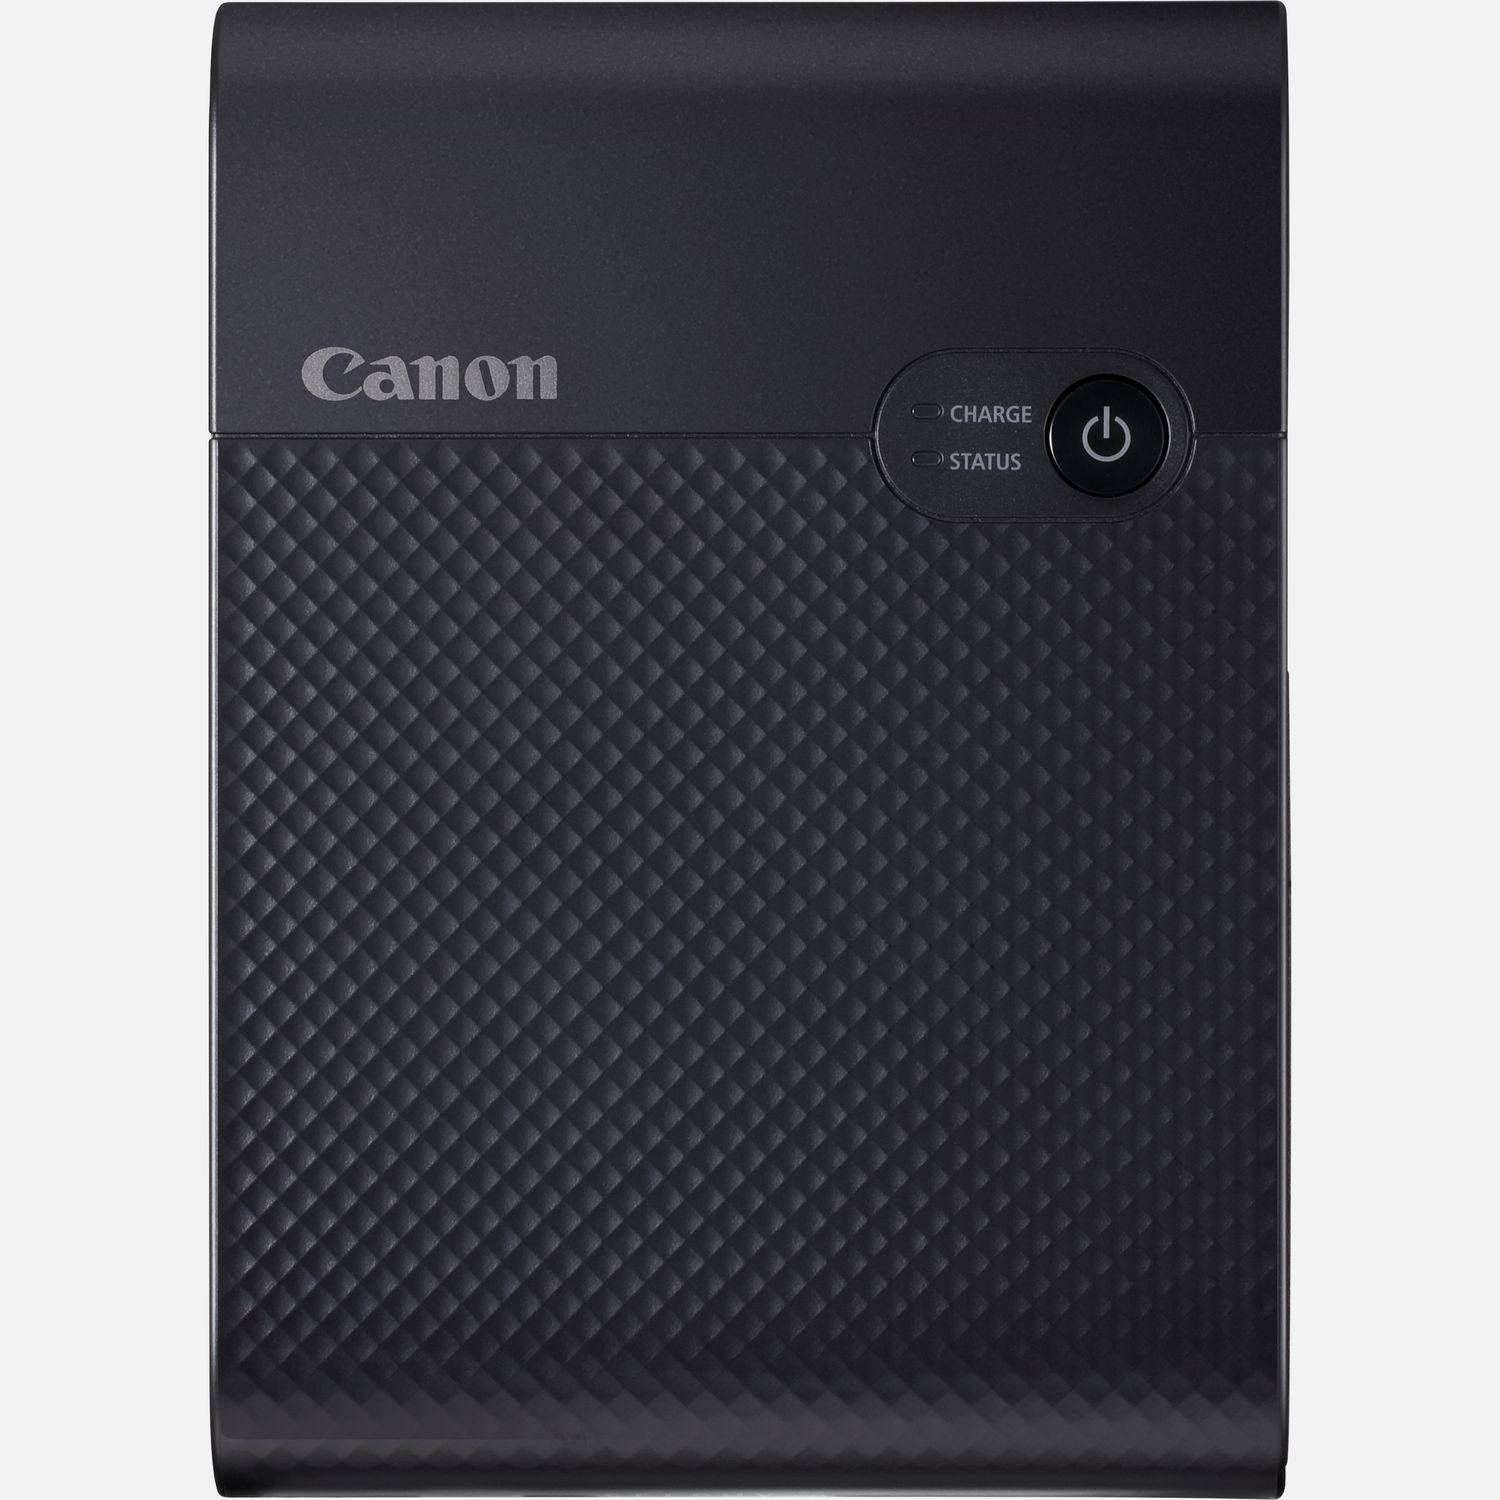 Image of Stampante fotografica portatile wireless a colori Canon SELPHY SQUARE QX10, nero